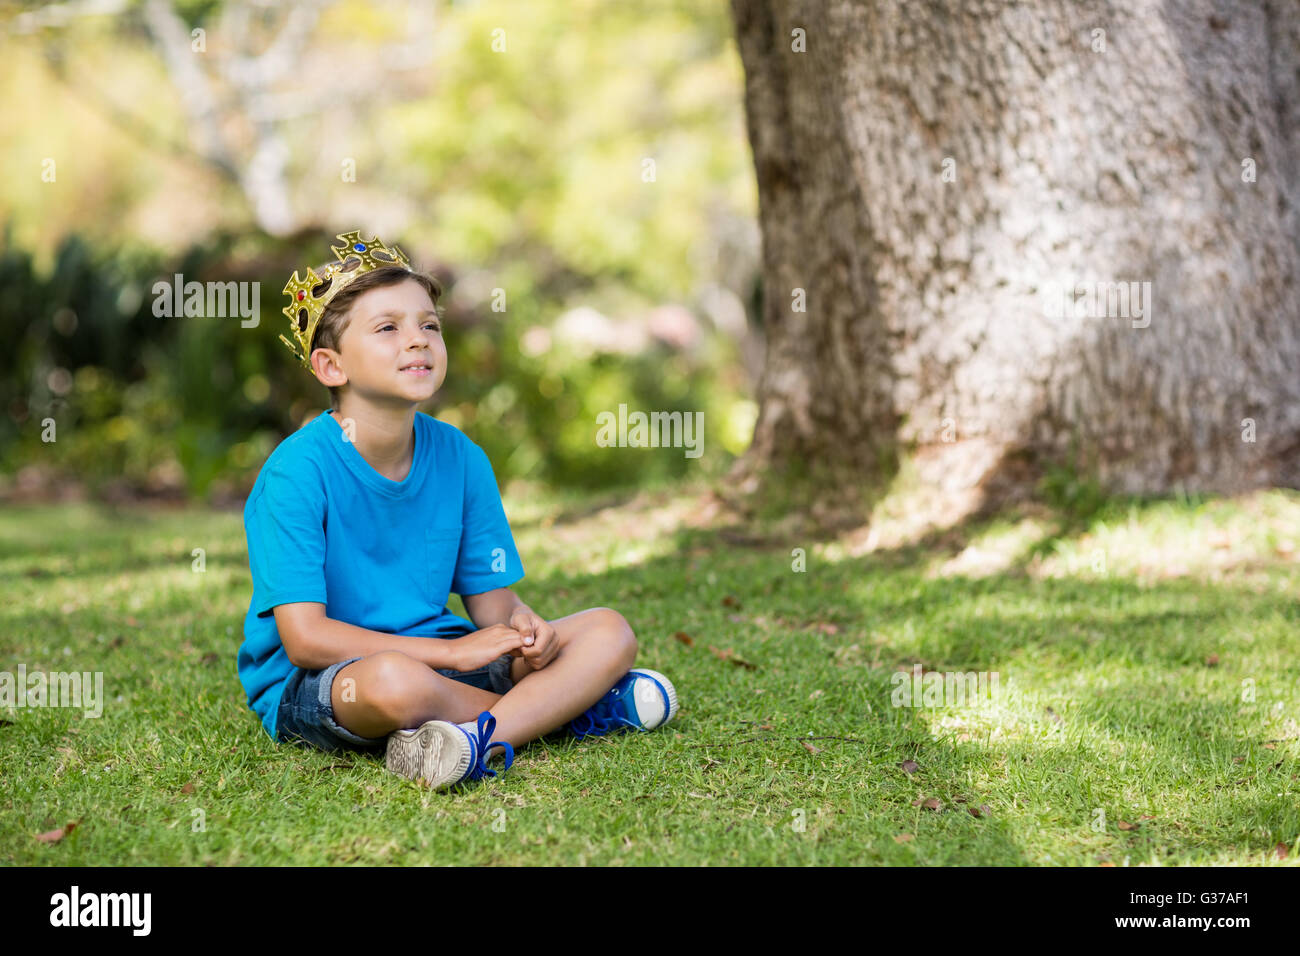 Jeune garçon portant une couronne et sitting on grass Banque D'Images